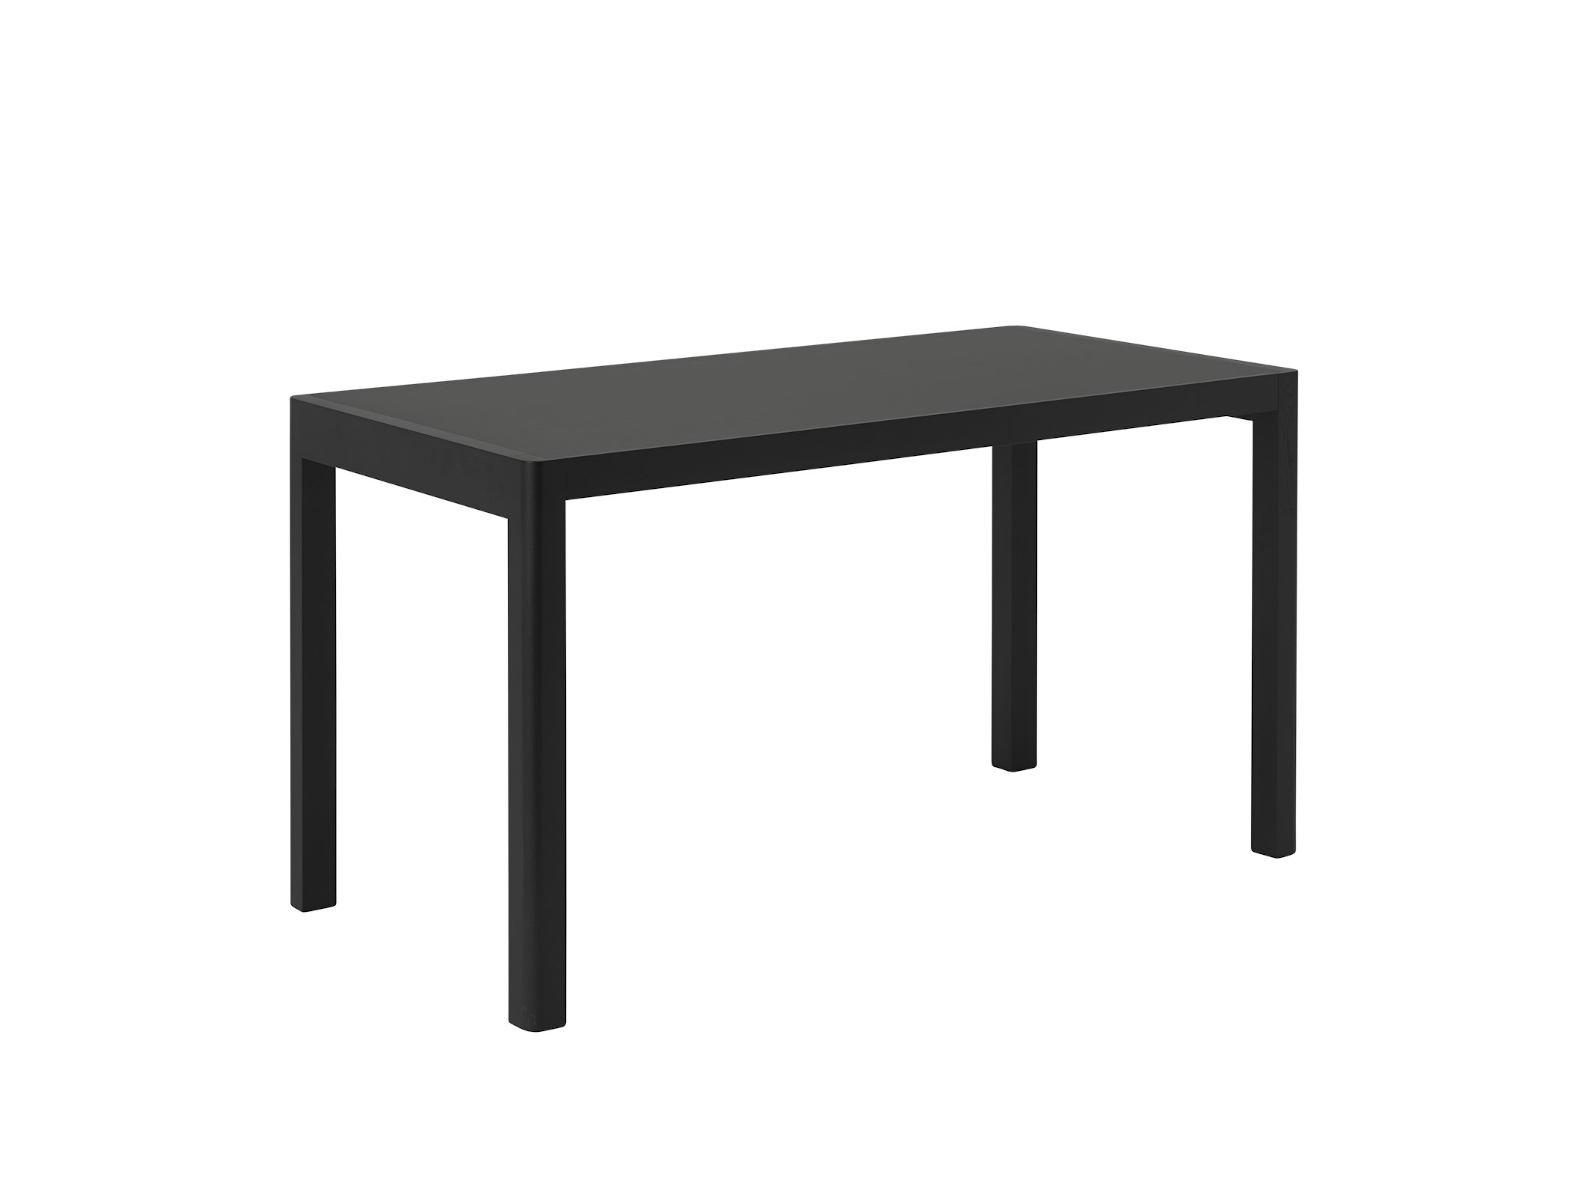 Workshop Tisch, 130 x 65 cm, linoleum schwarz / schwarz